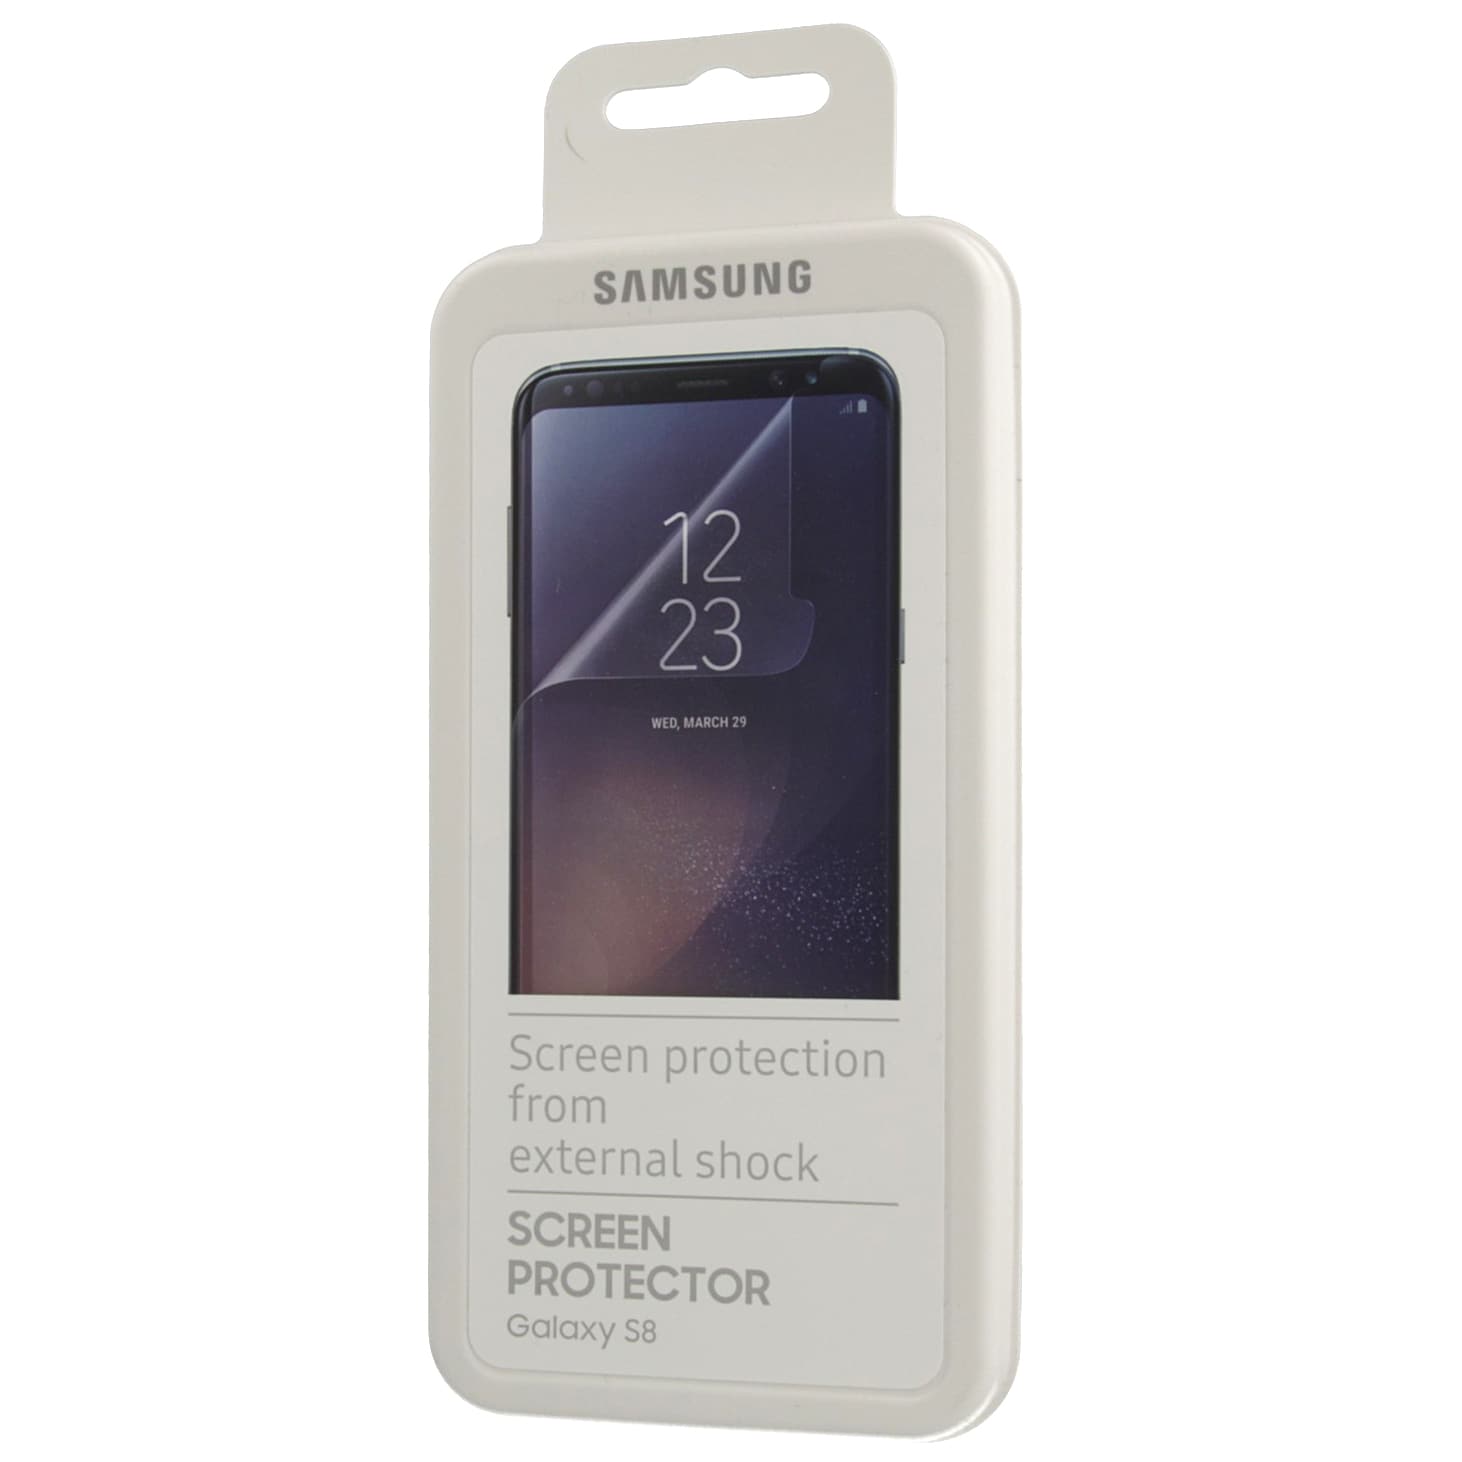 Samsung skärmskydd FG950 för Galaxy S8